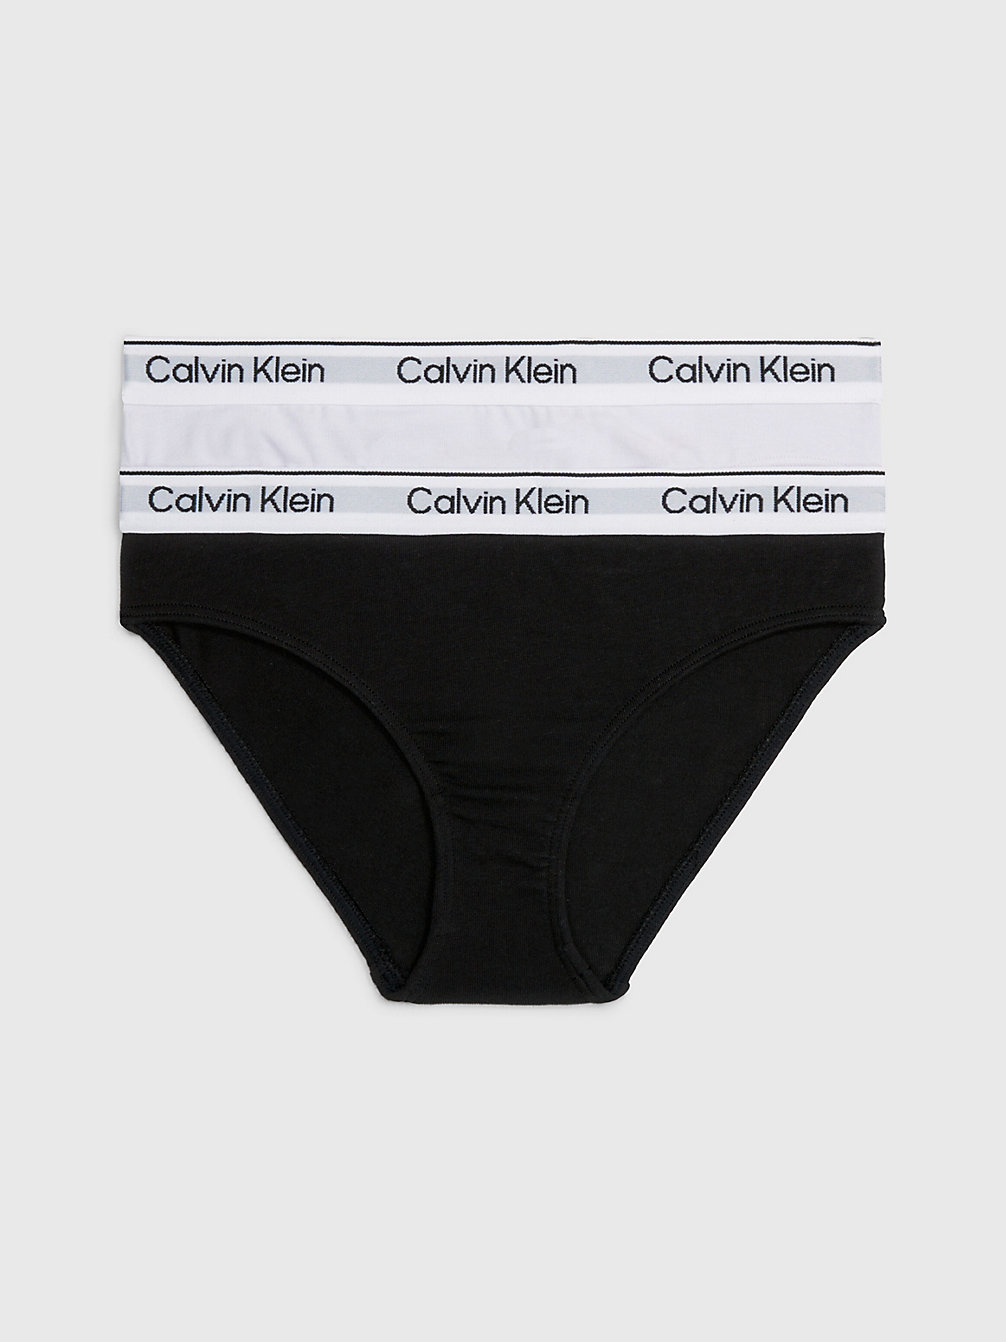 LAVENDERSPLASH/PVHBLACK 2 Pack Girls Bikini Briefs - Modern Cotton undefined girls Calvin Klein